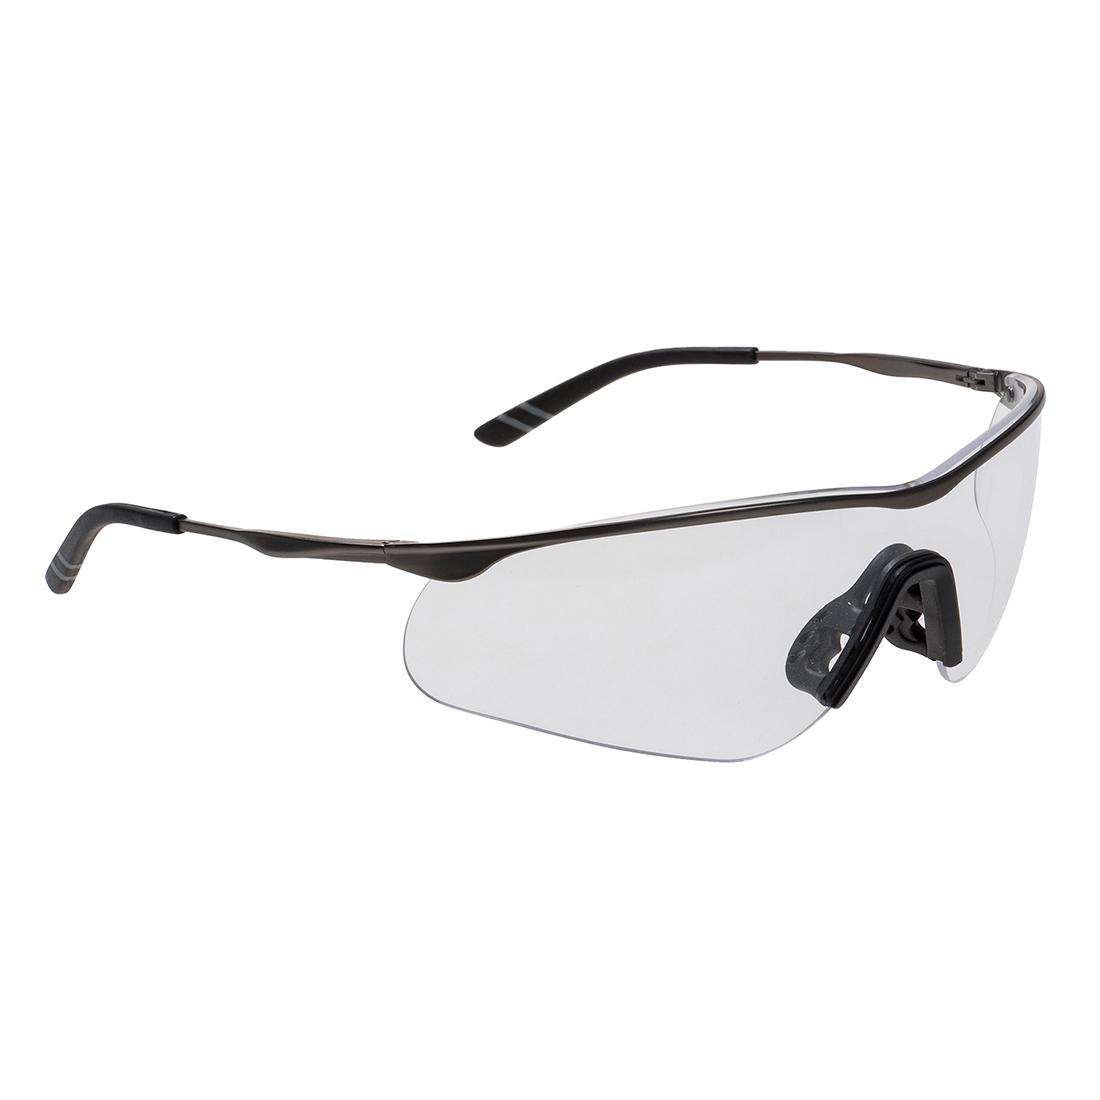 Очки защитные поликарбонатные. Очки ps31520. Очки ps2117. Очки защитные в металлической оправе. Рабочие очки.